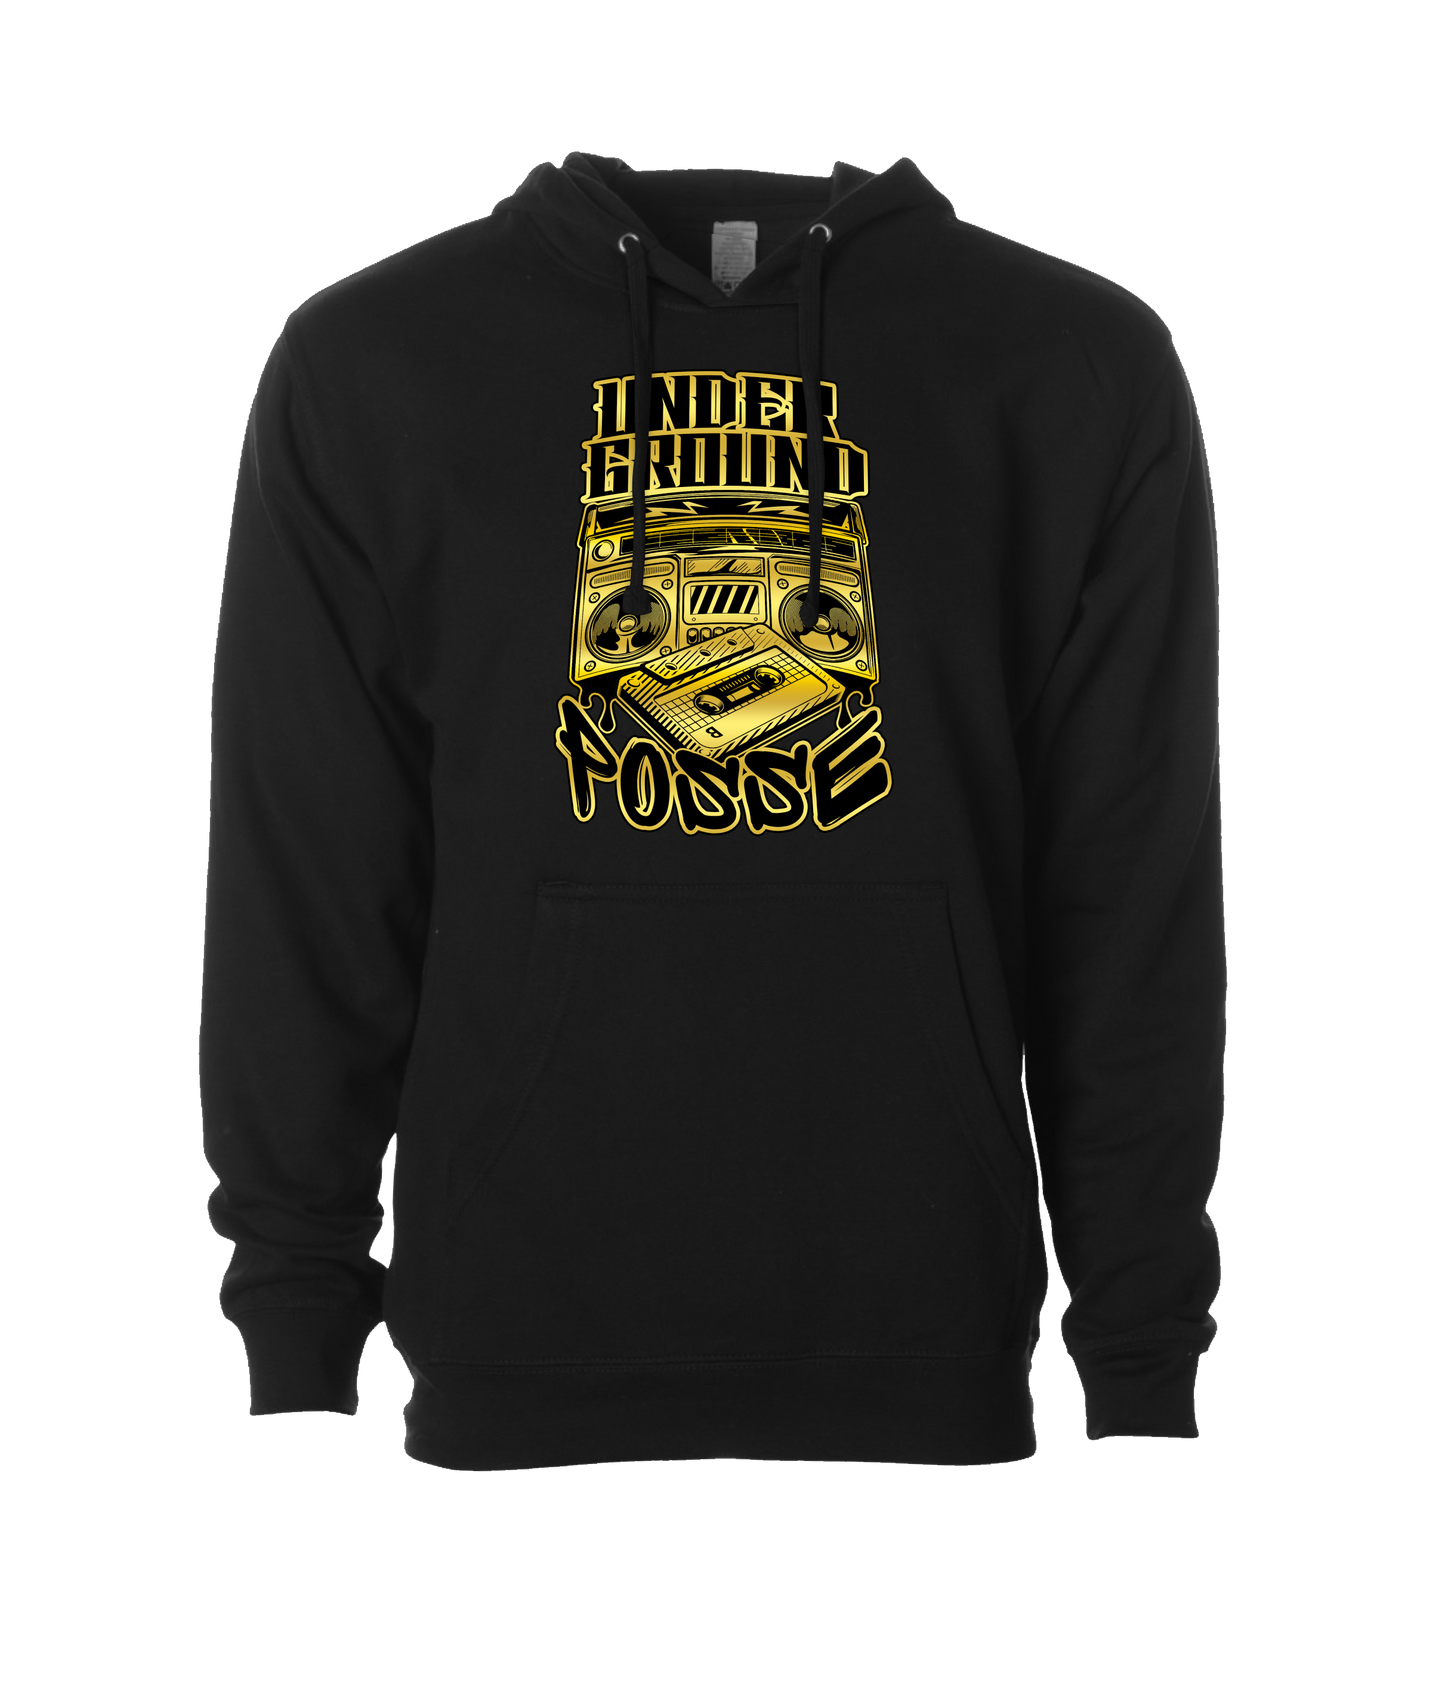 The Posse Store - UGP - Black Hoodie